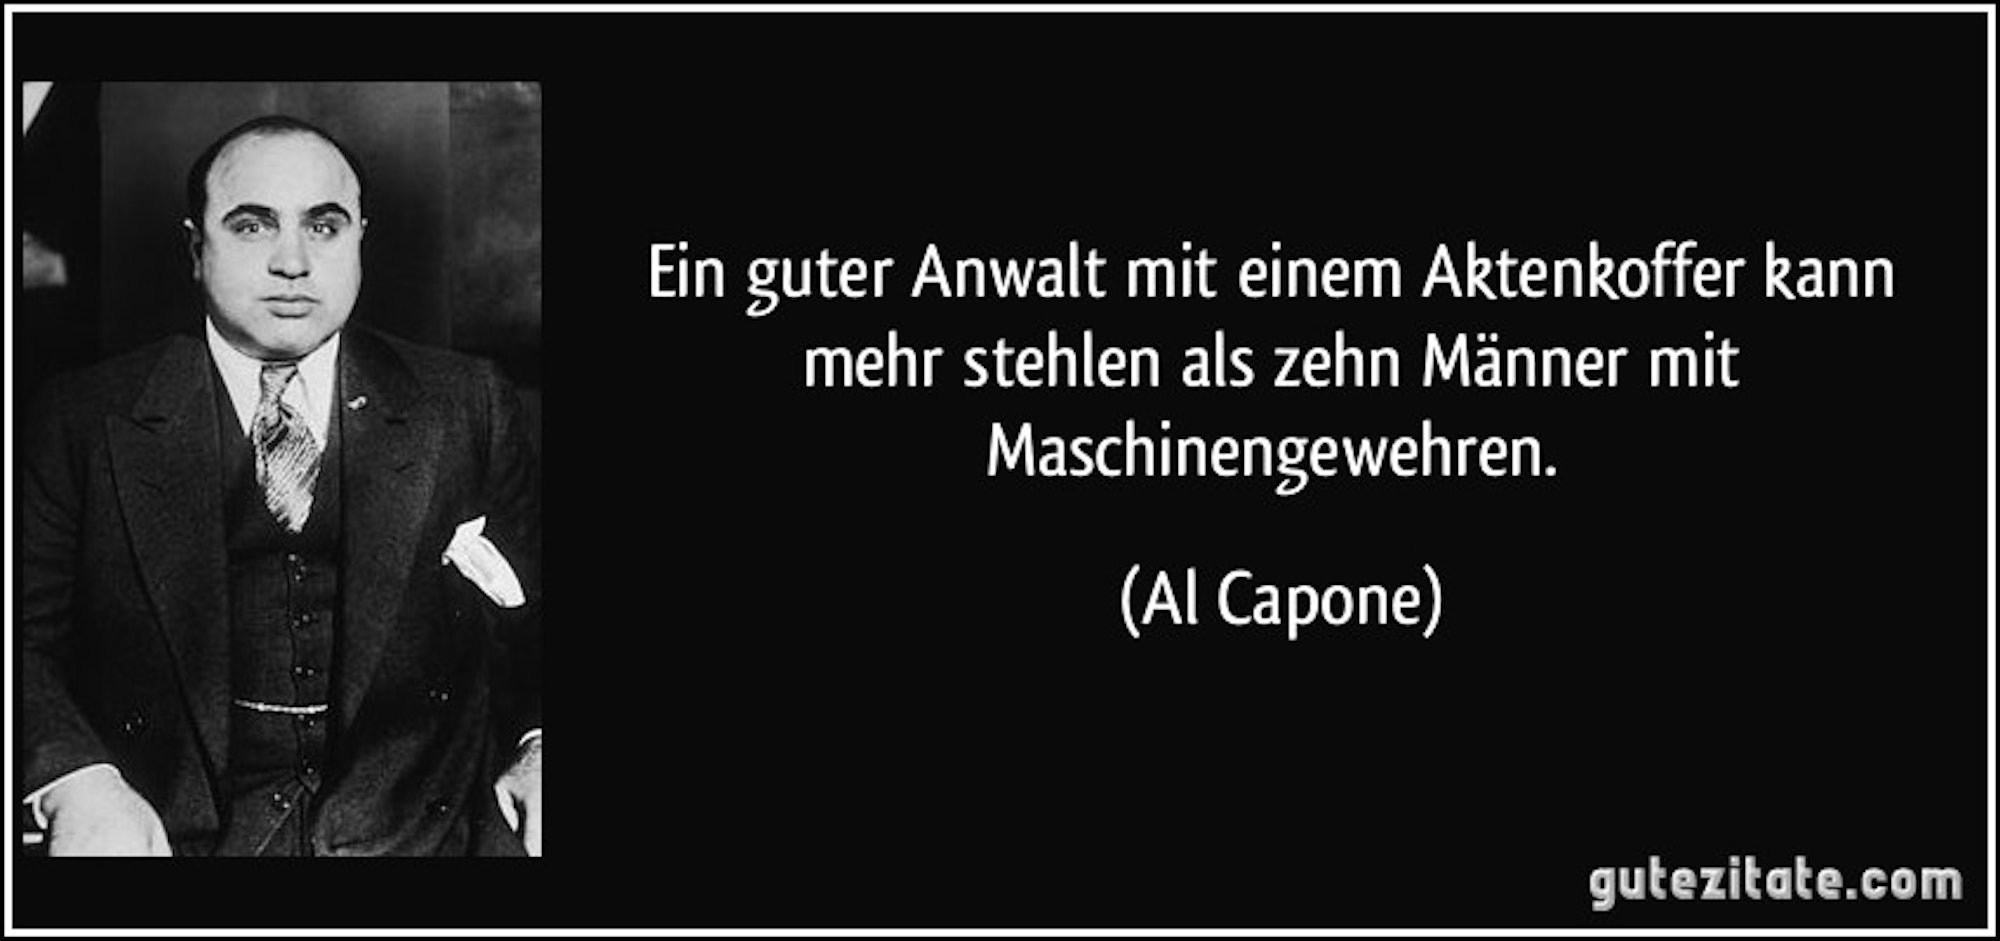 Anwalt Capone